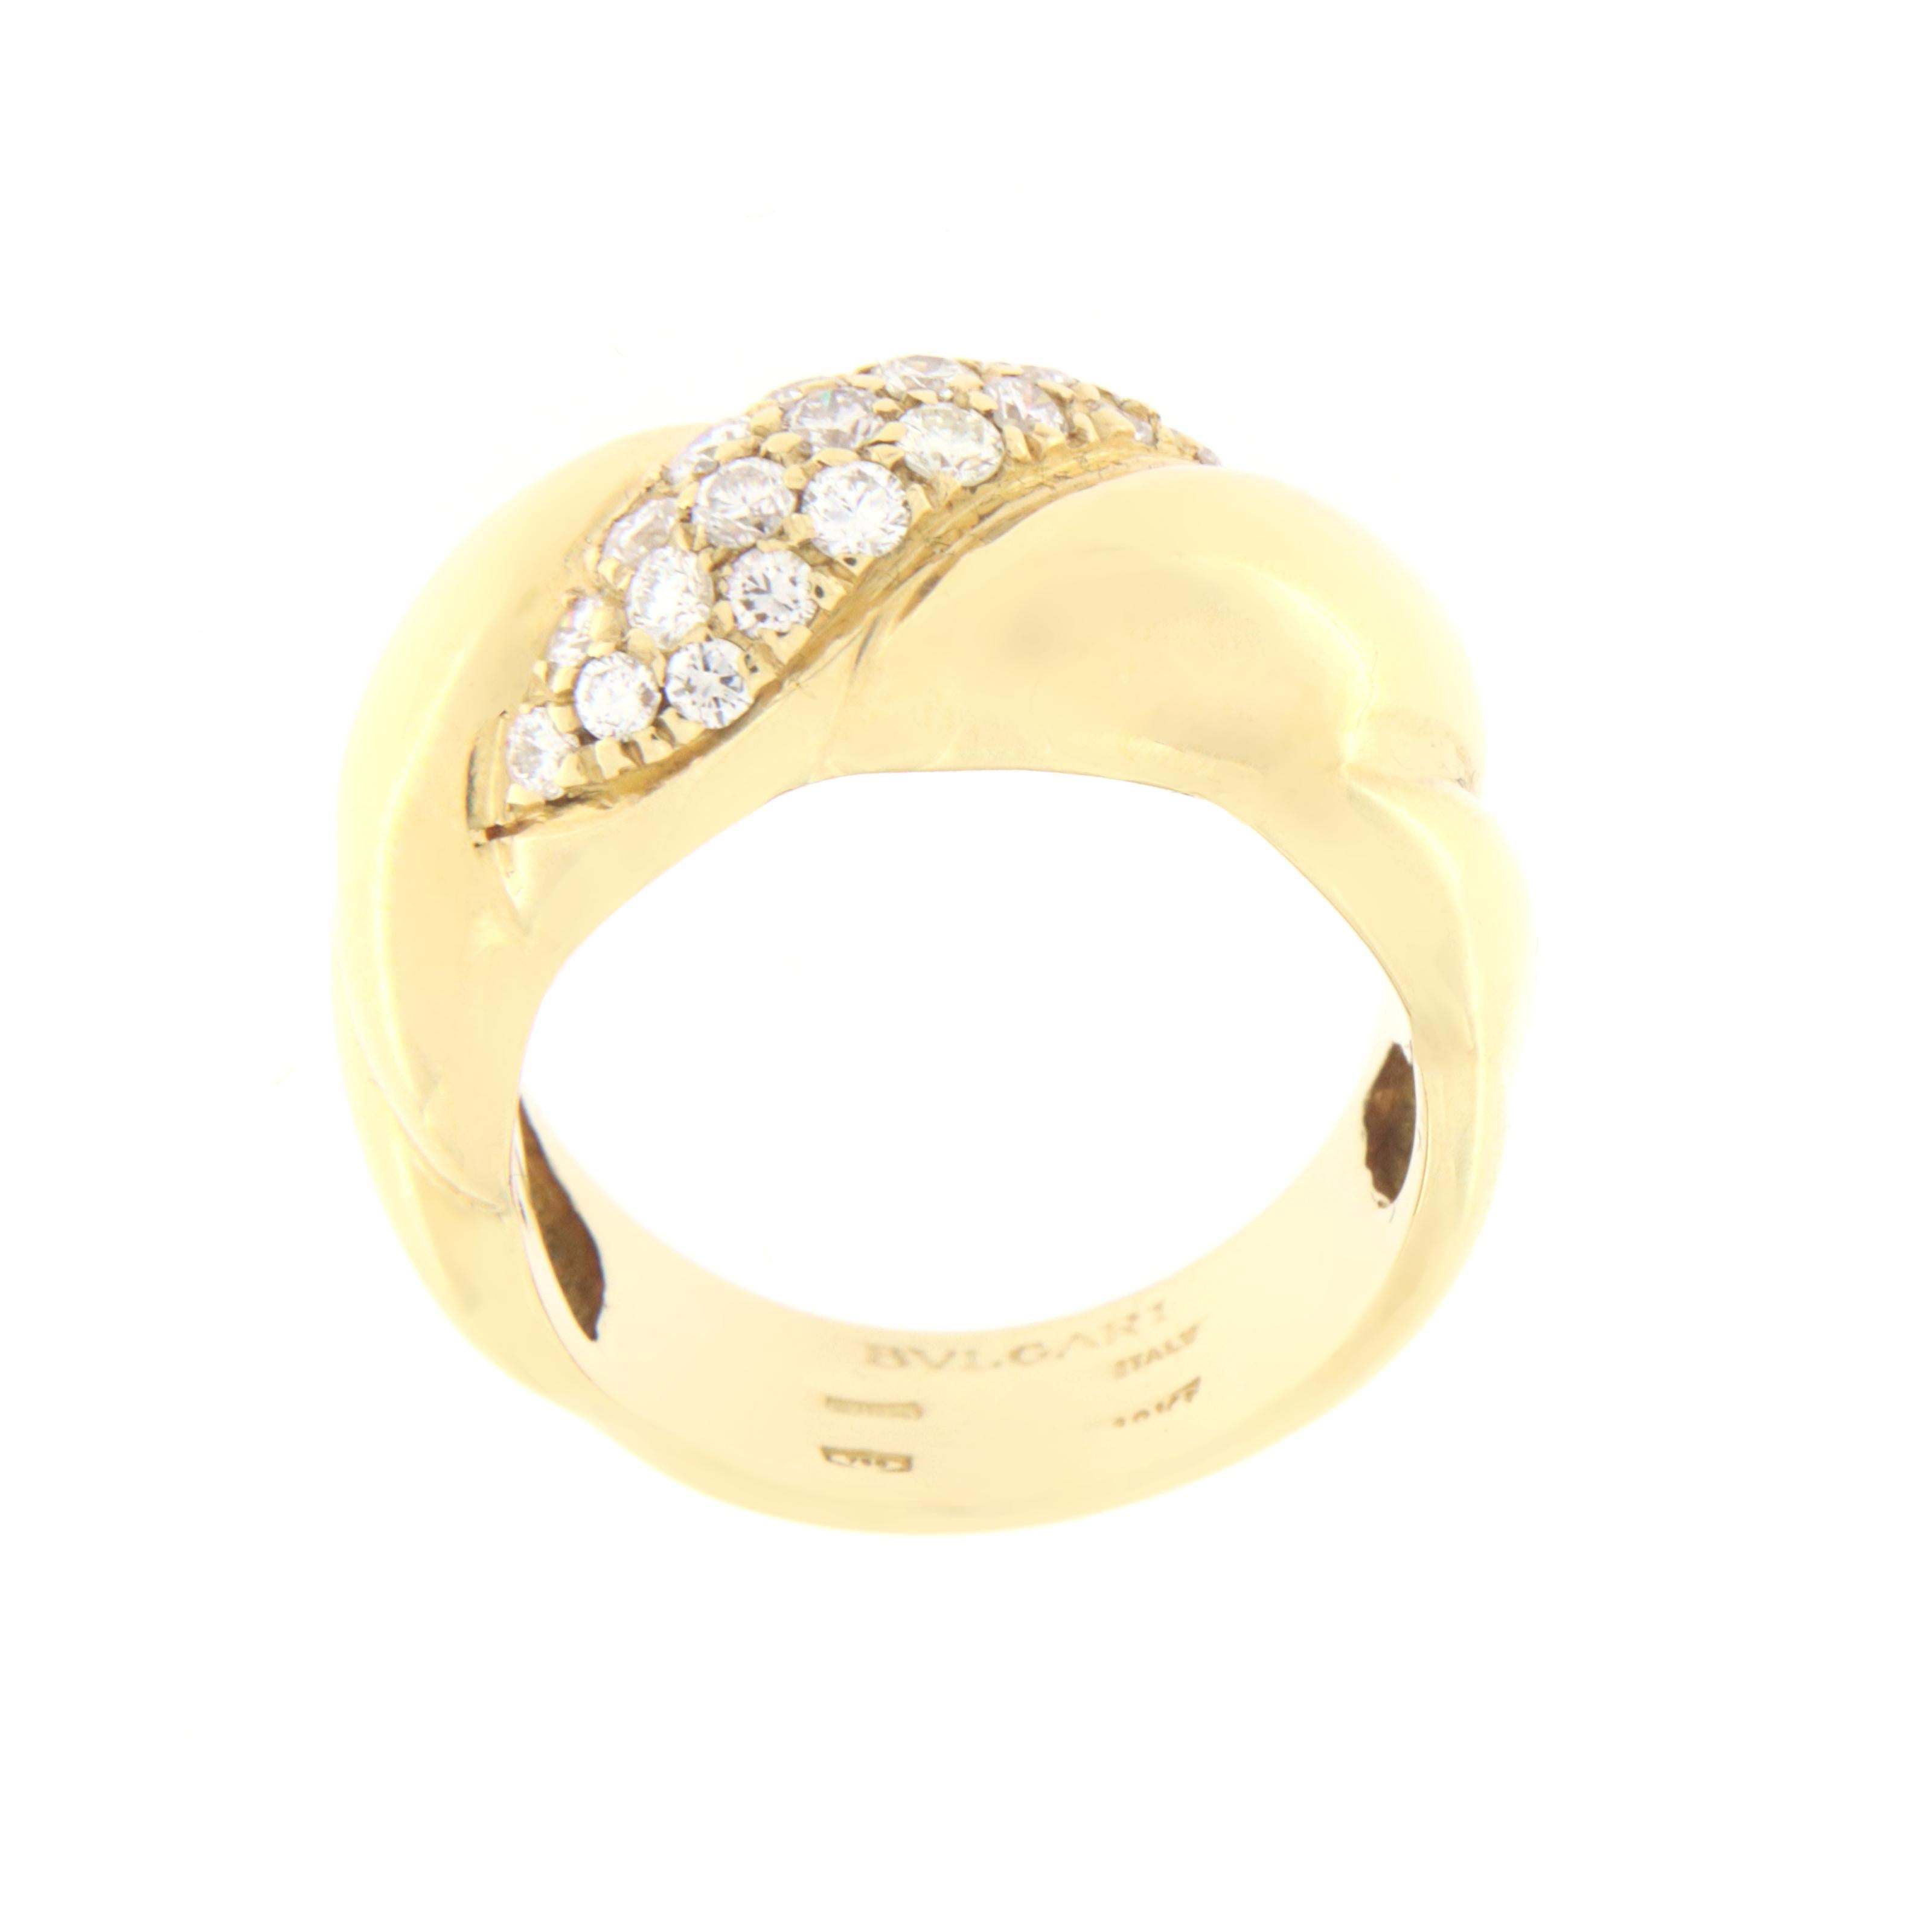 Spektakulärer Ring Bulgari 18 Karat Gelbgold und Diamanten

Gesamtgewicht des Rings 15 Gramm
Gesamtgewicht der Diamanten 0.76 Karat
Ring Größe 14 ITA 7 US
(alle Ringe sind größenverstellbar)

